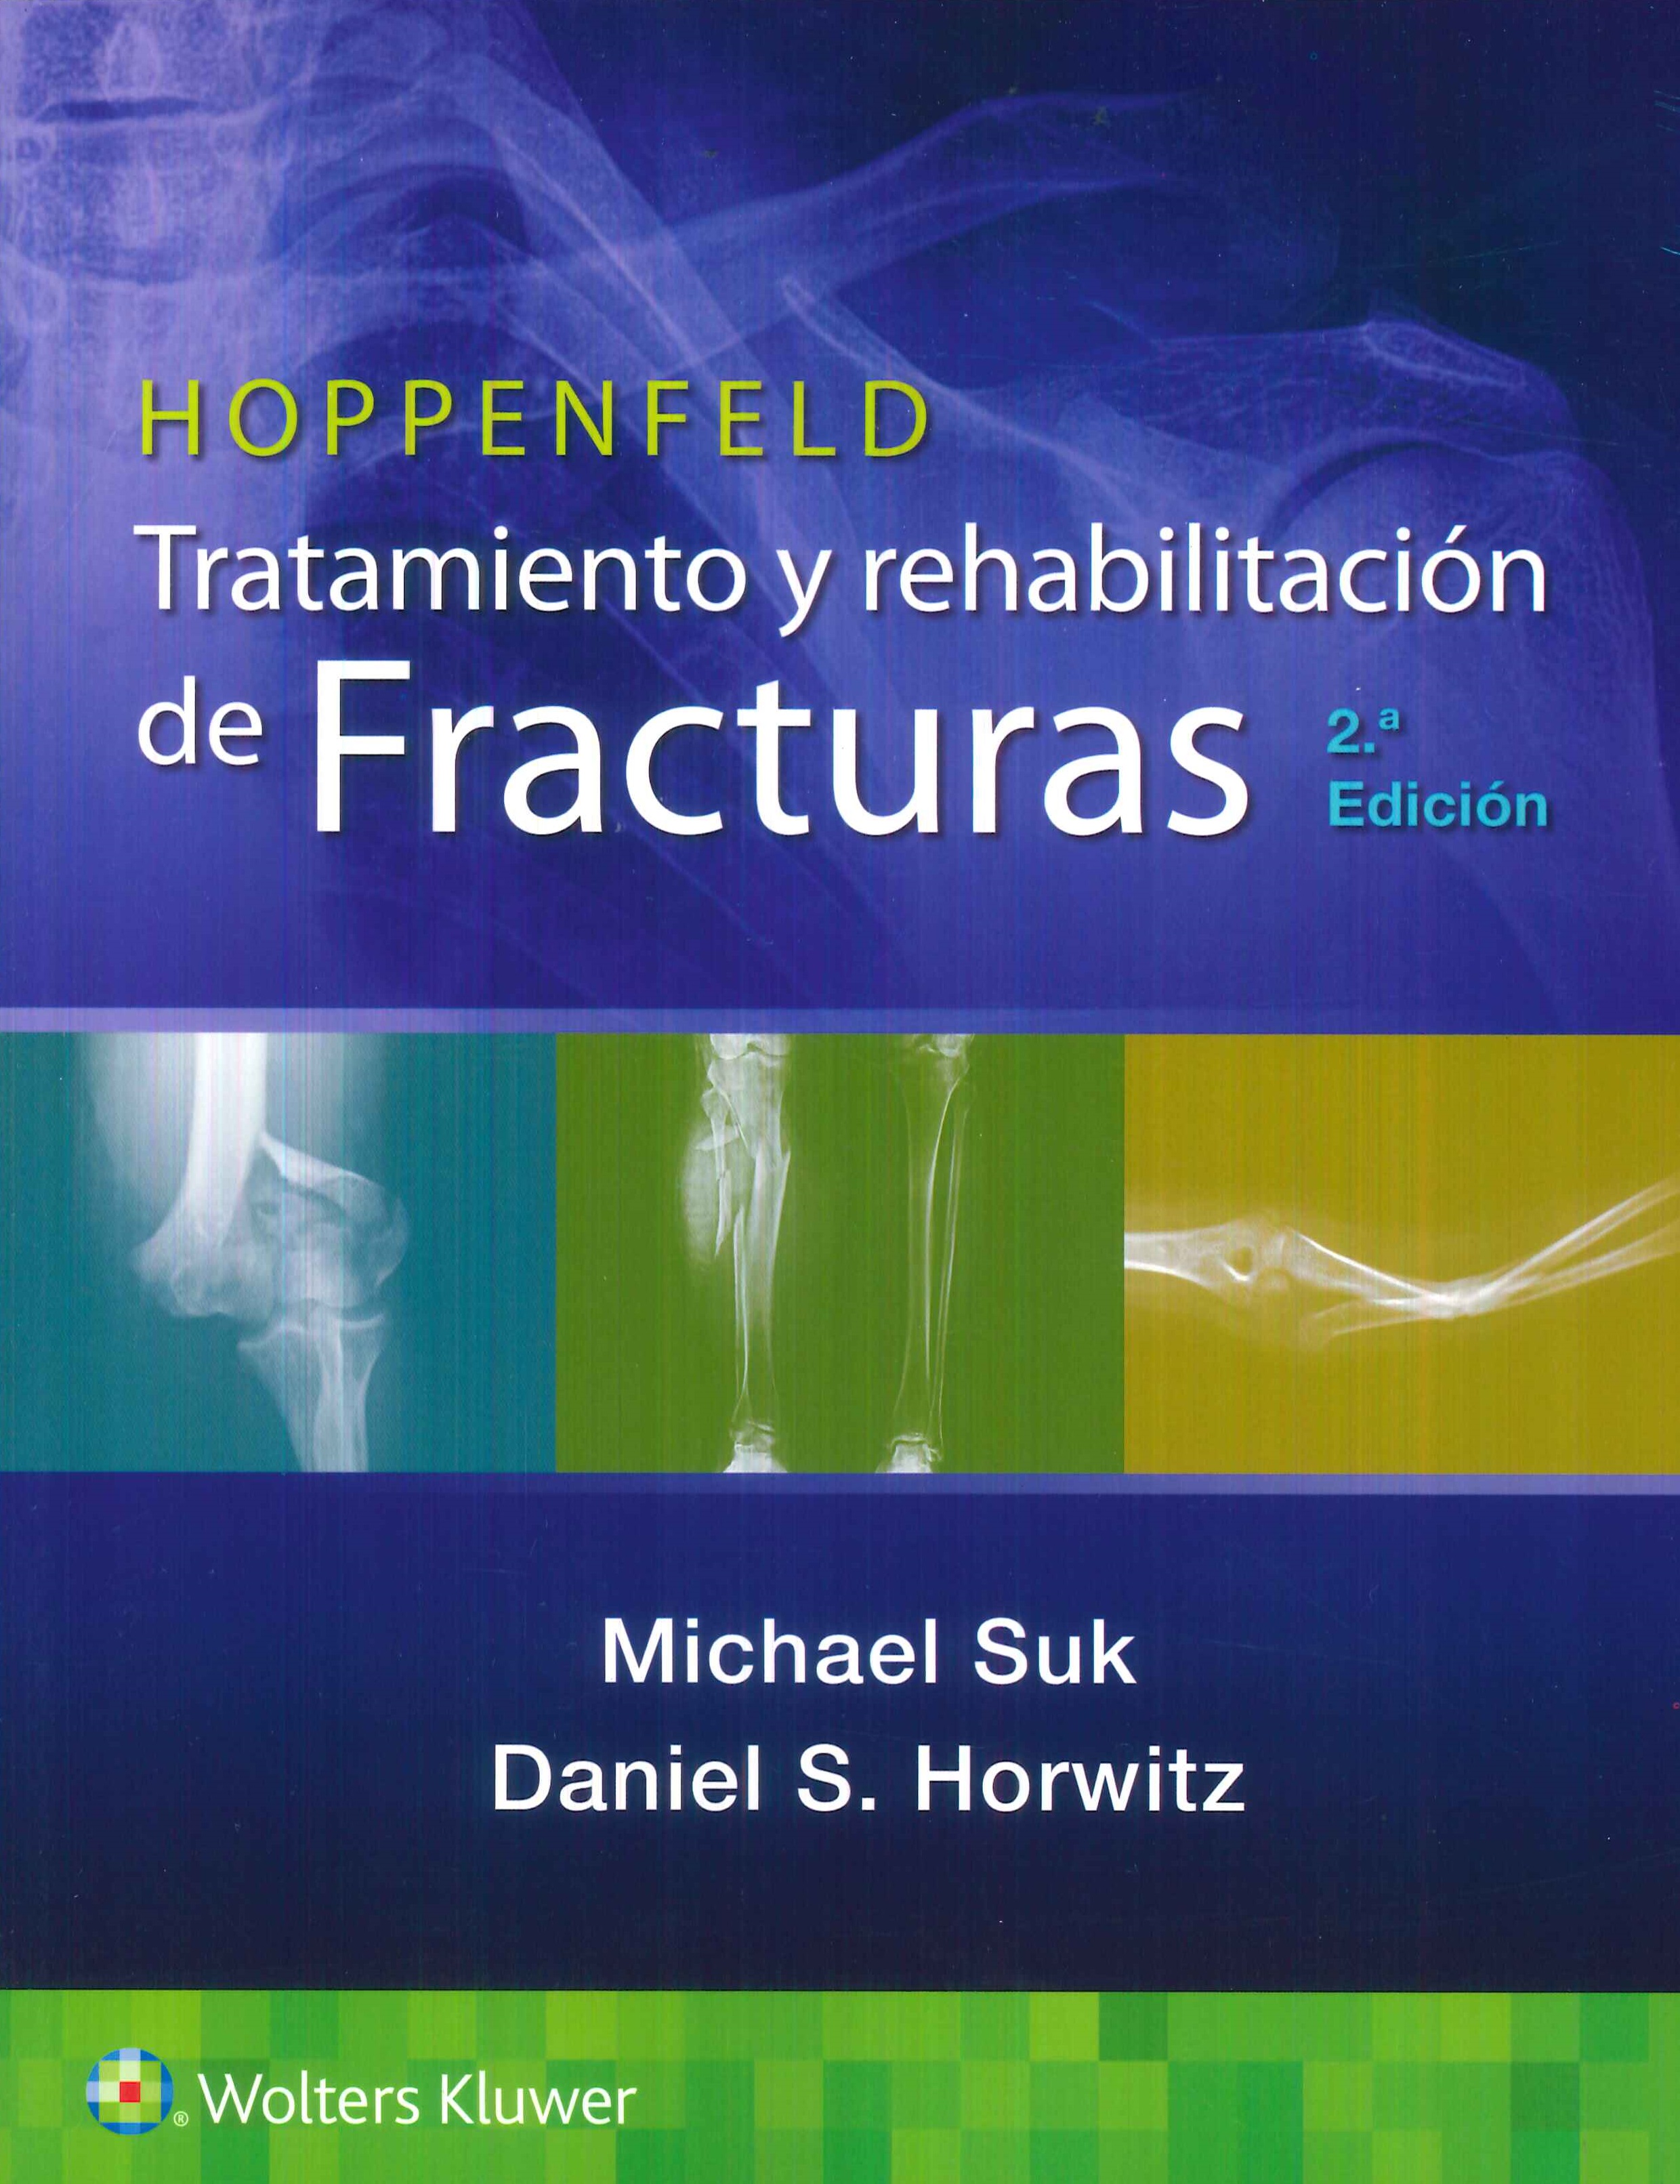 Hoppenfeld. Tratamiento y rehabilitación de fracturas